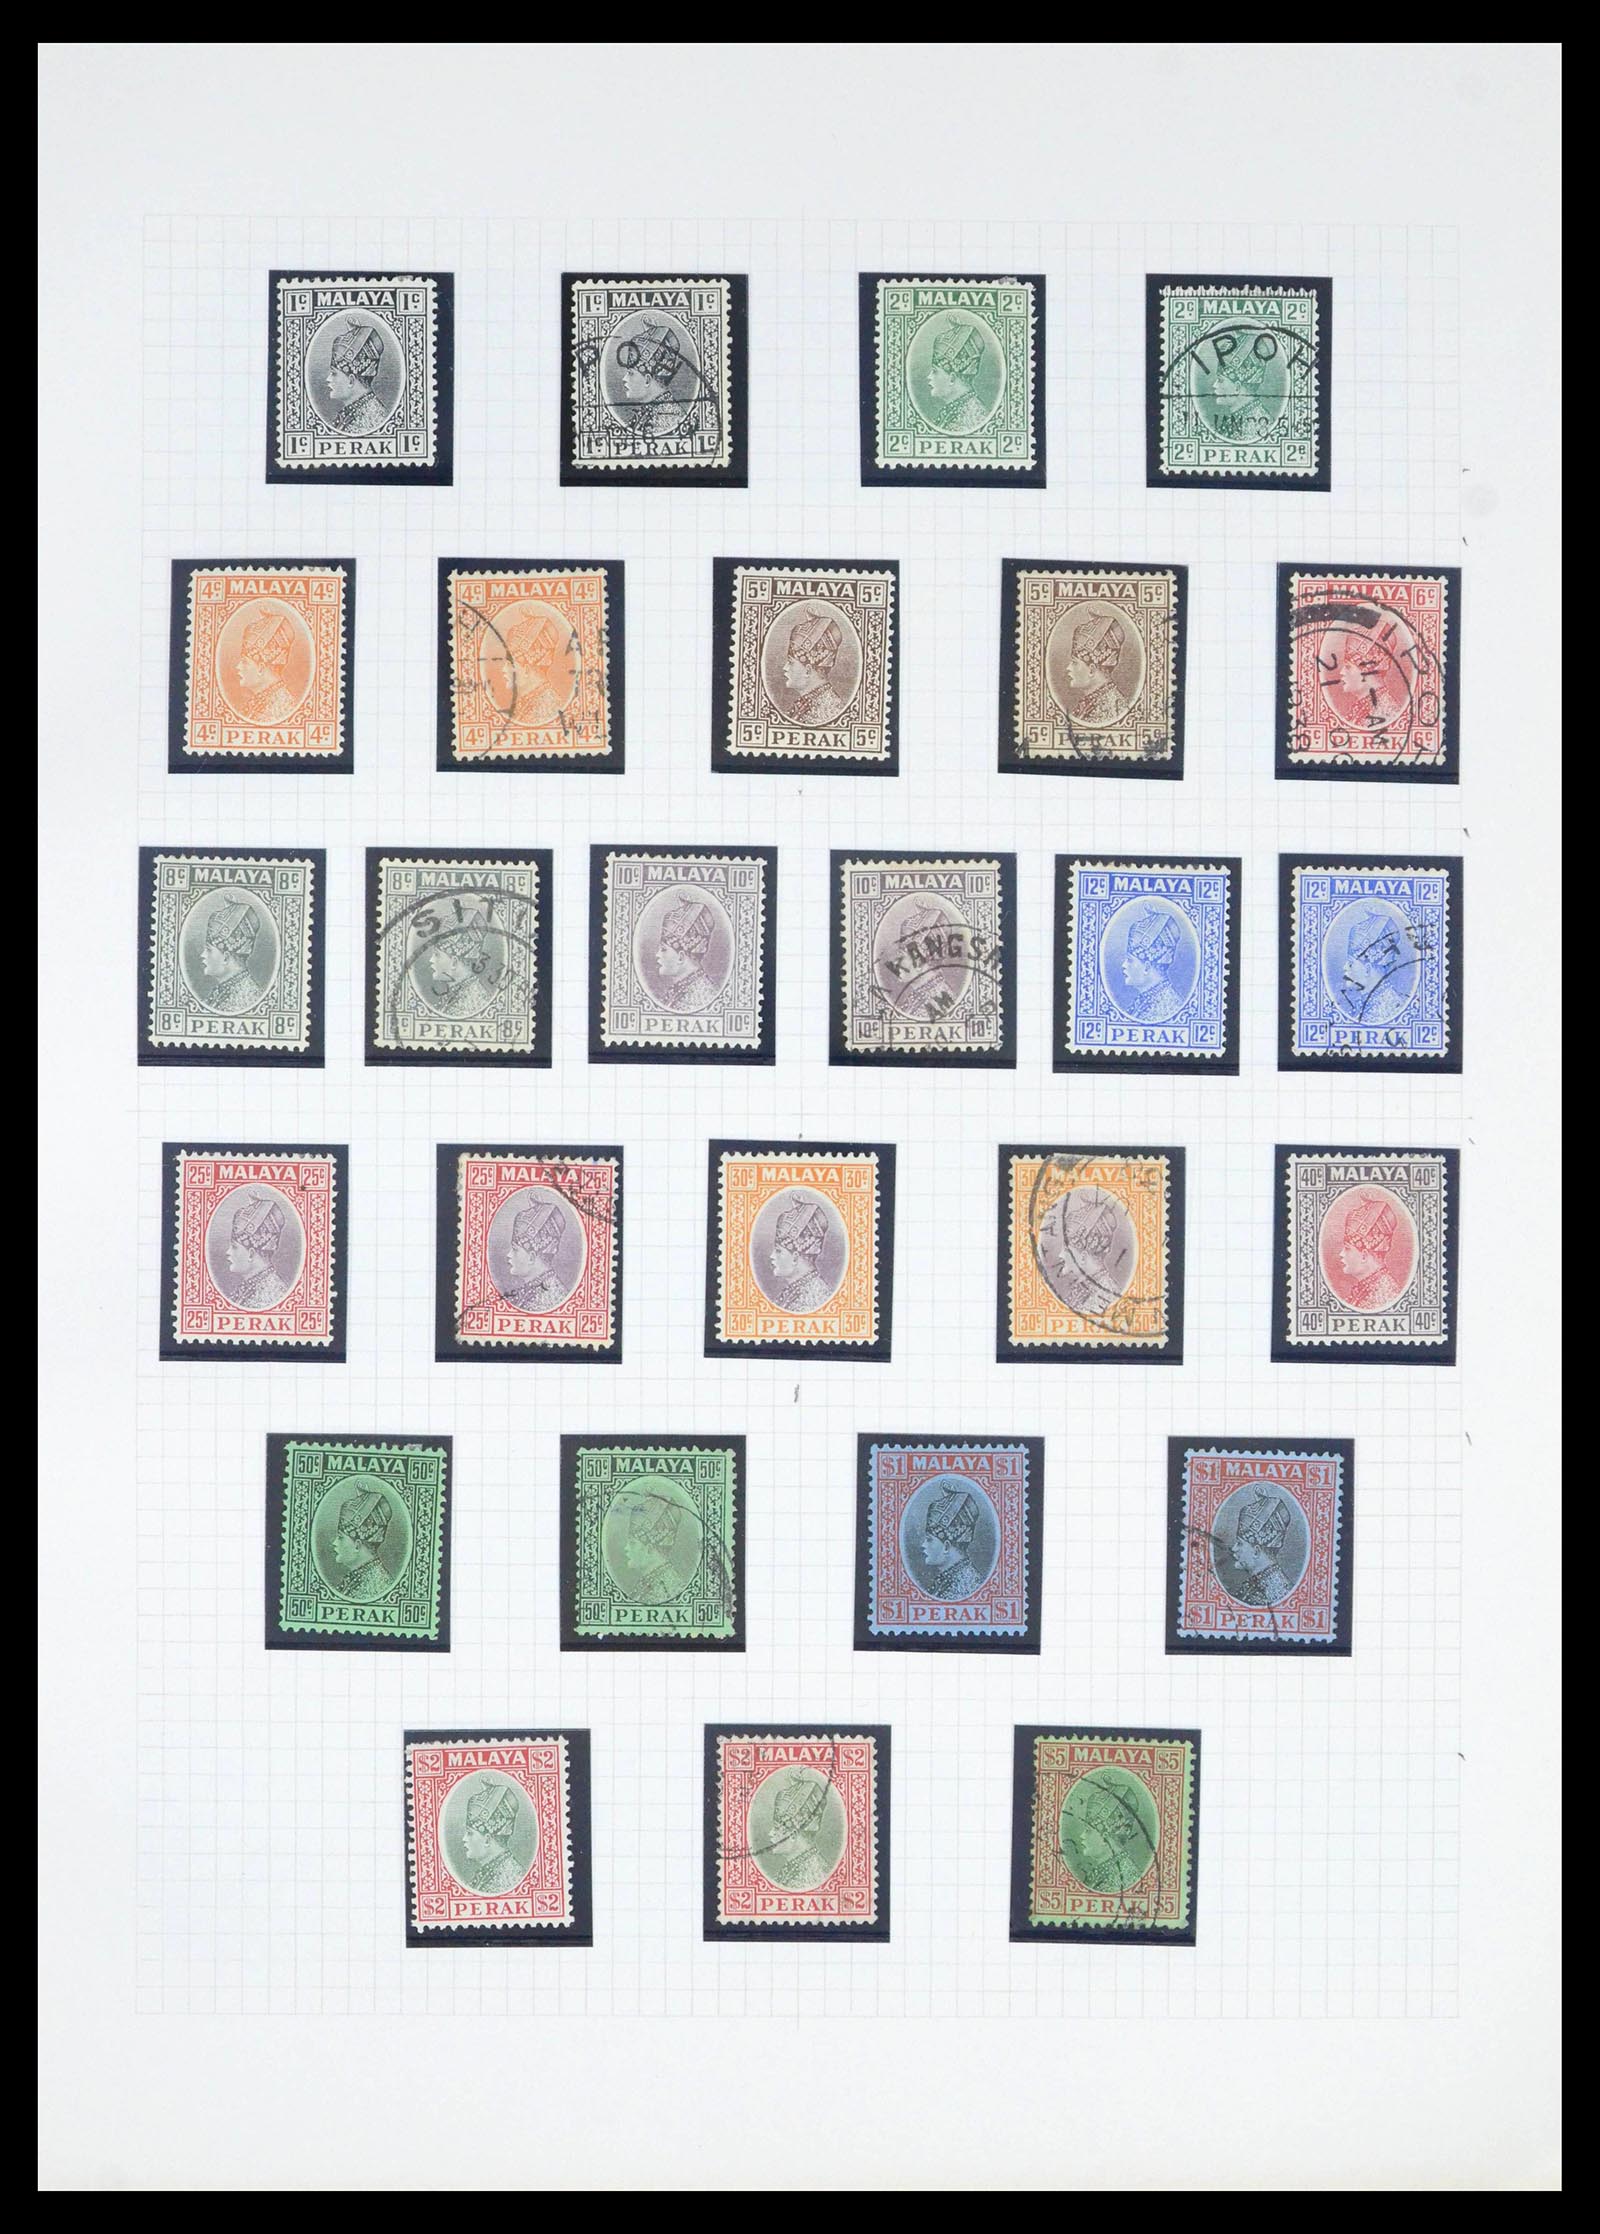 39470 0018 - Postzegelverzameling 39470 Maleisische Staten 1880-1965.